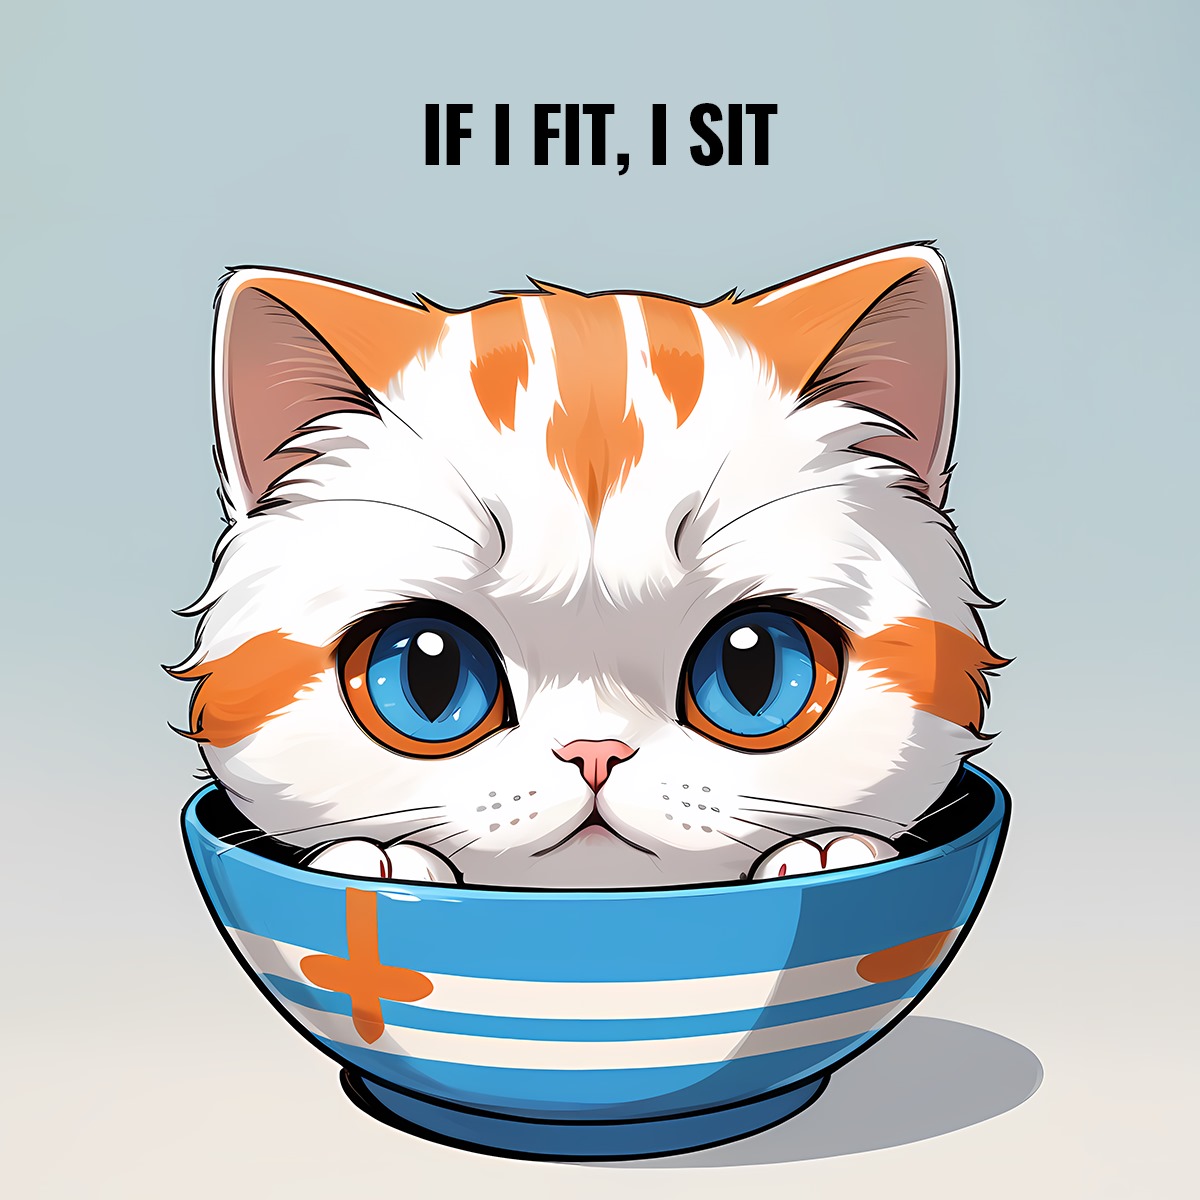 If i fit, i sit